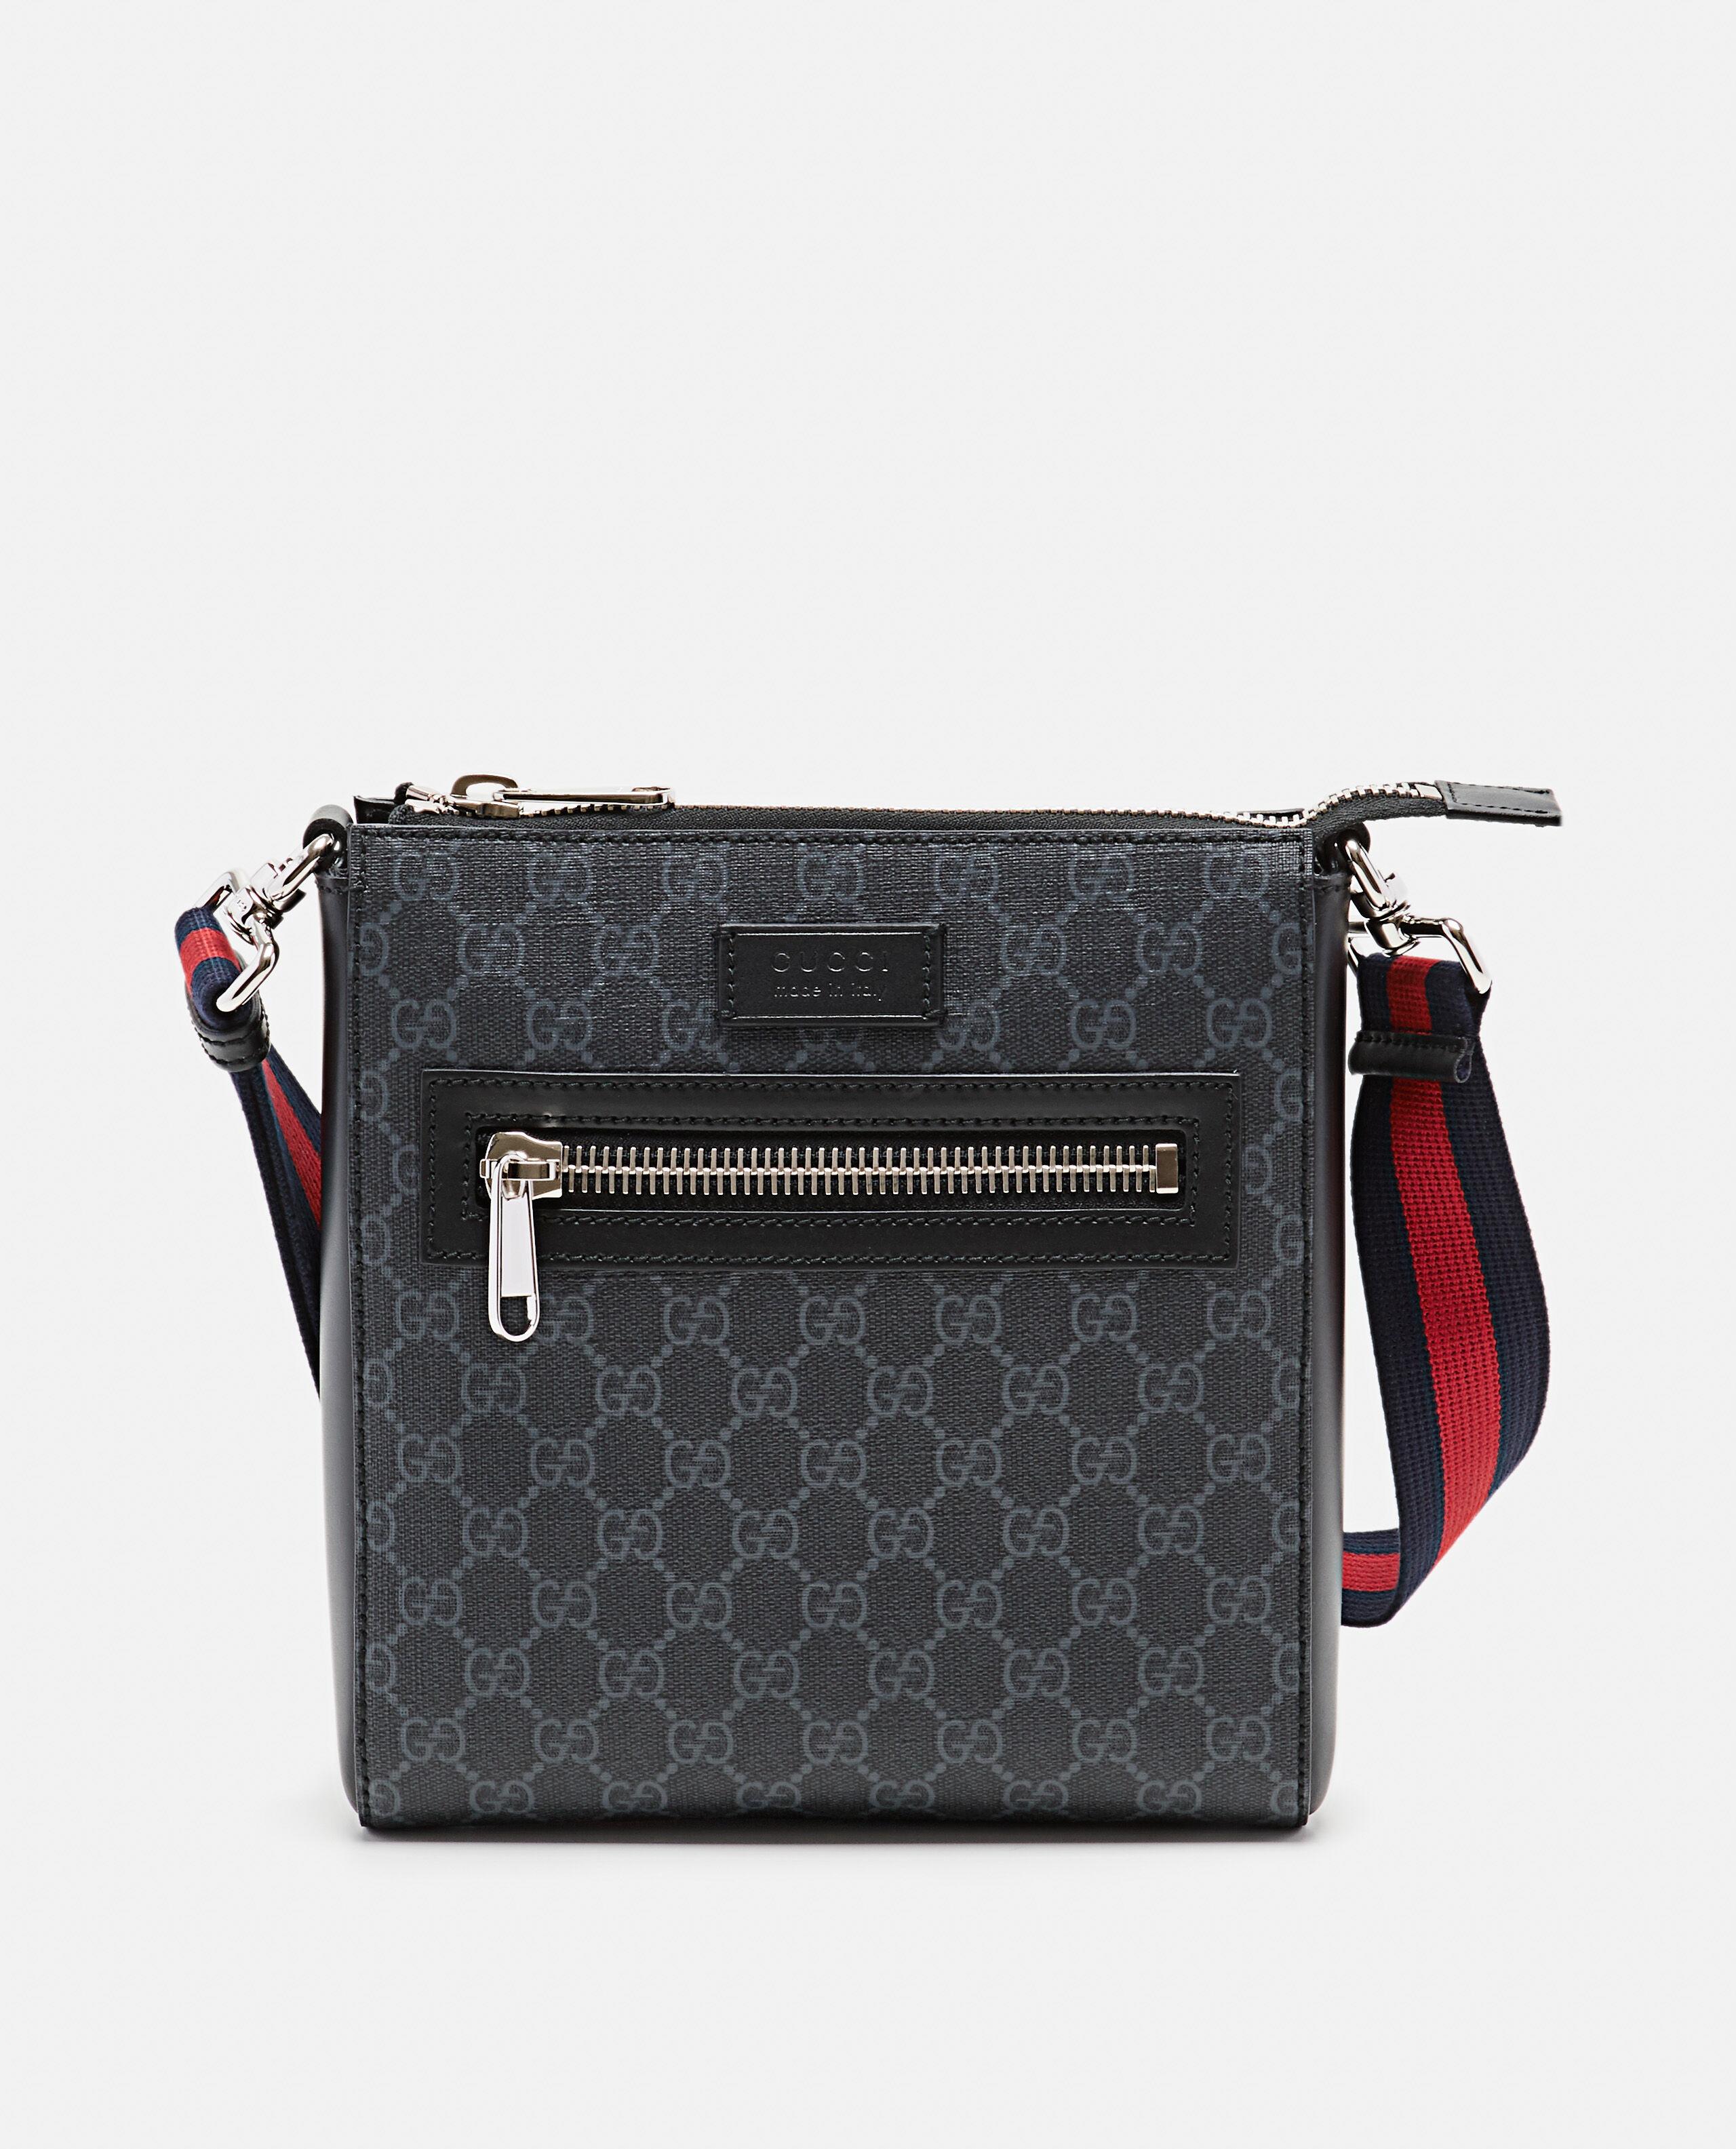 Gucci BLACK Shoulder Bag In Gg Supreme Fabric Small Size 